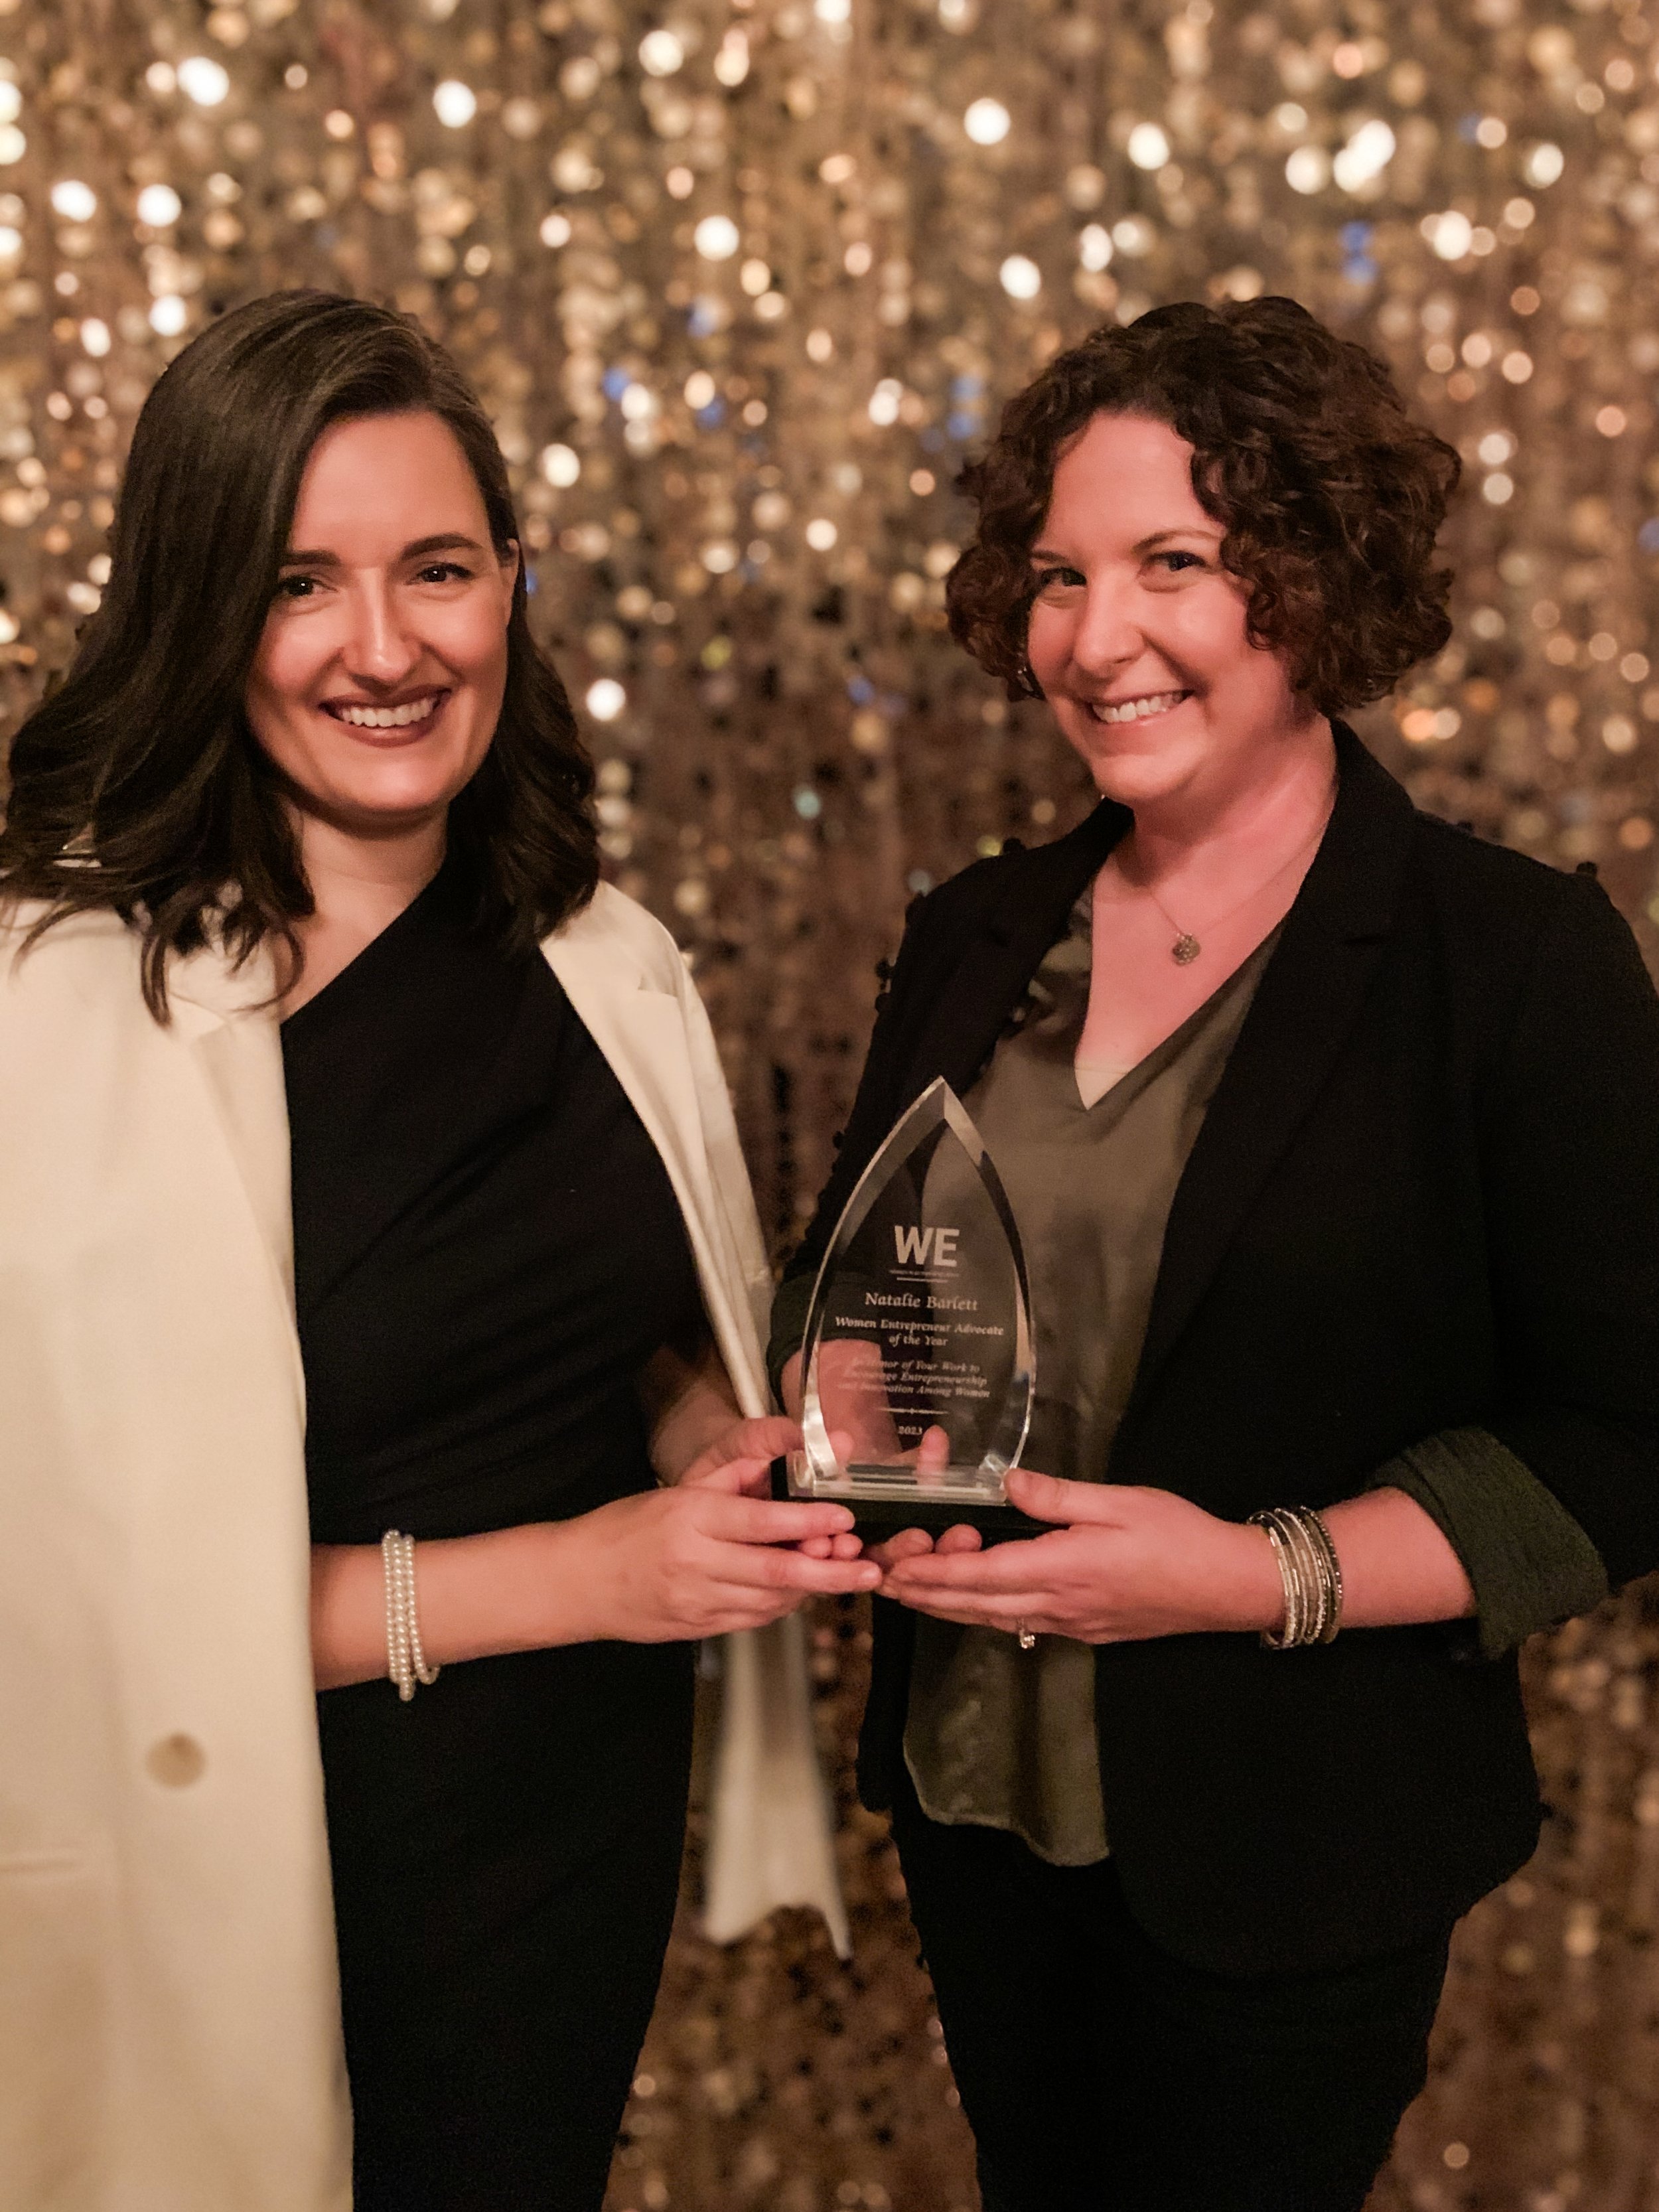 Natalie Barlett, winner of Women Entrepreneur Advocate Award